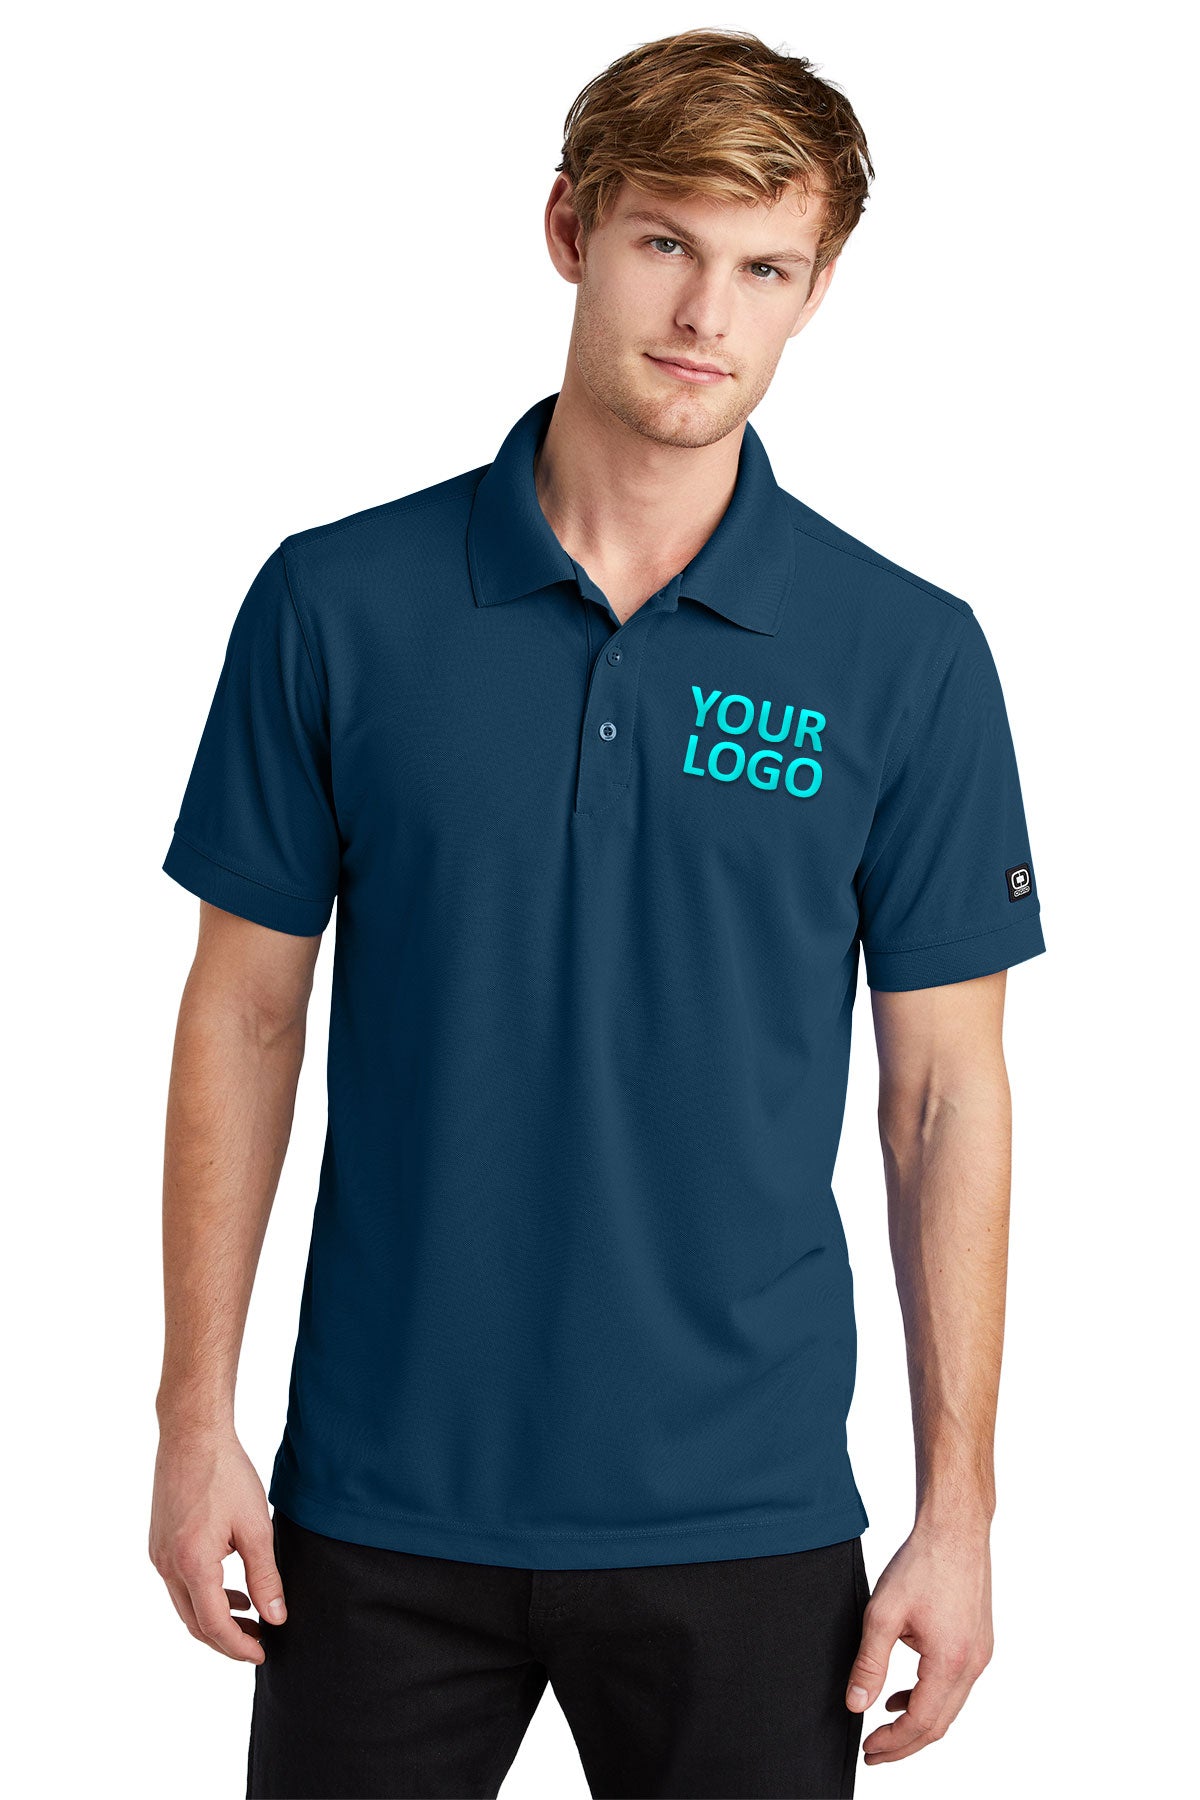 OGIO Spar Blue OG101 polo shirts with custom logo